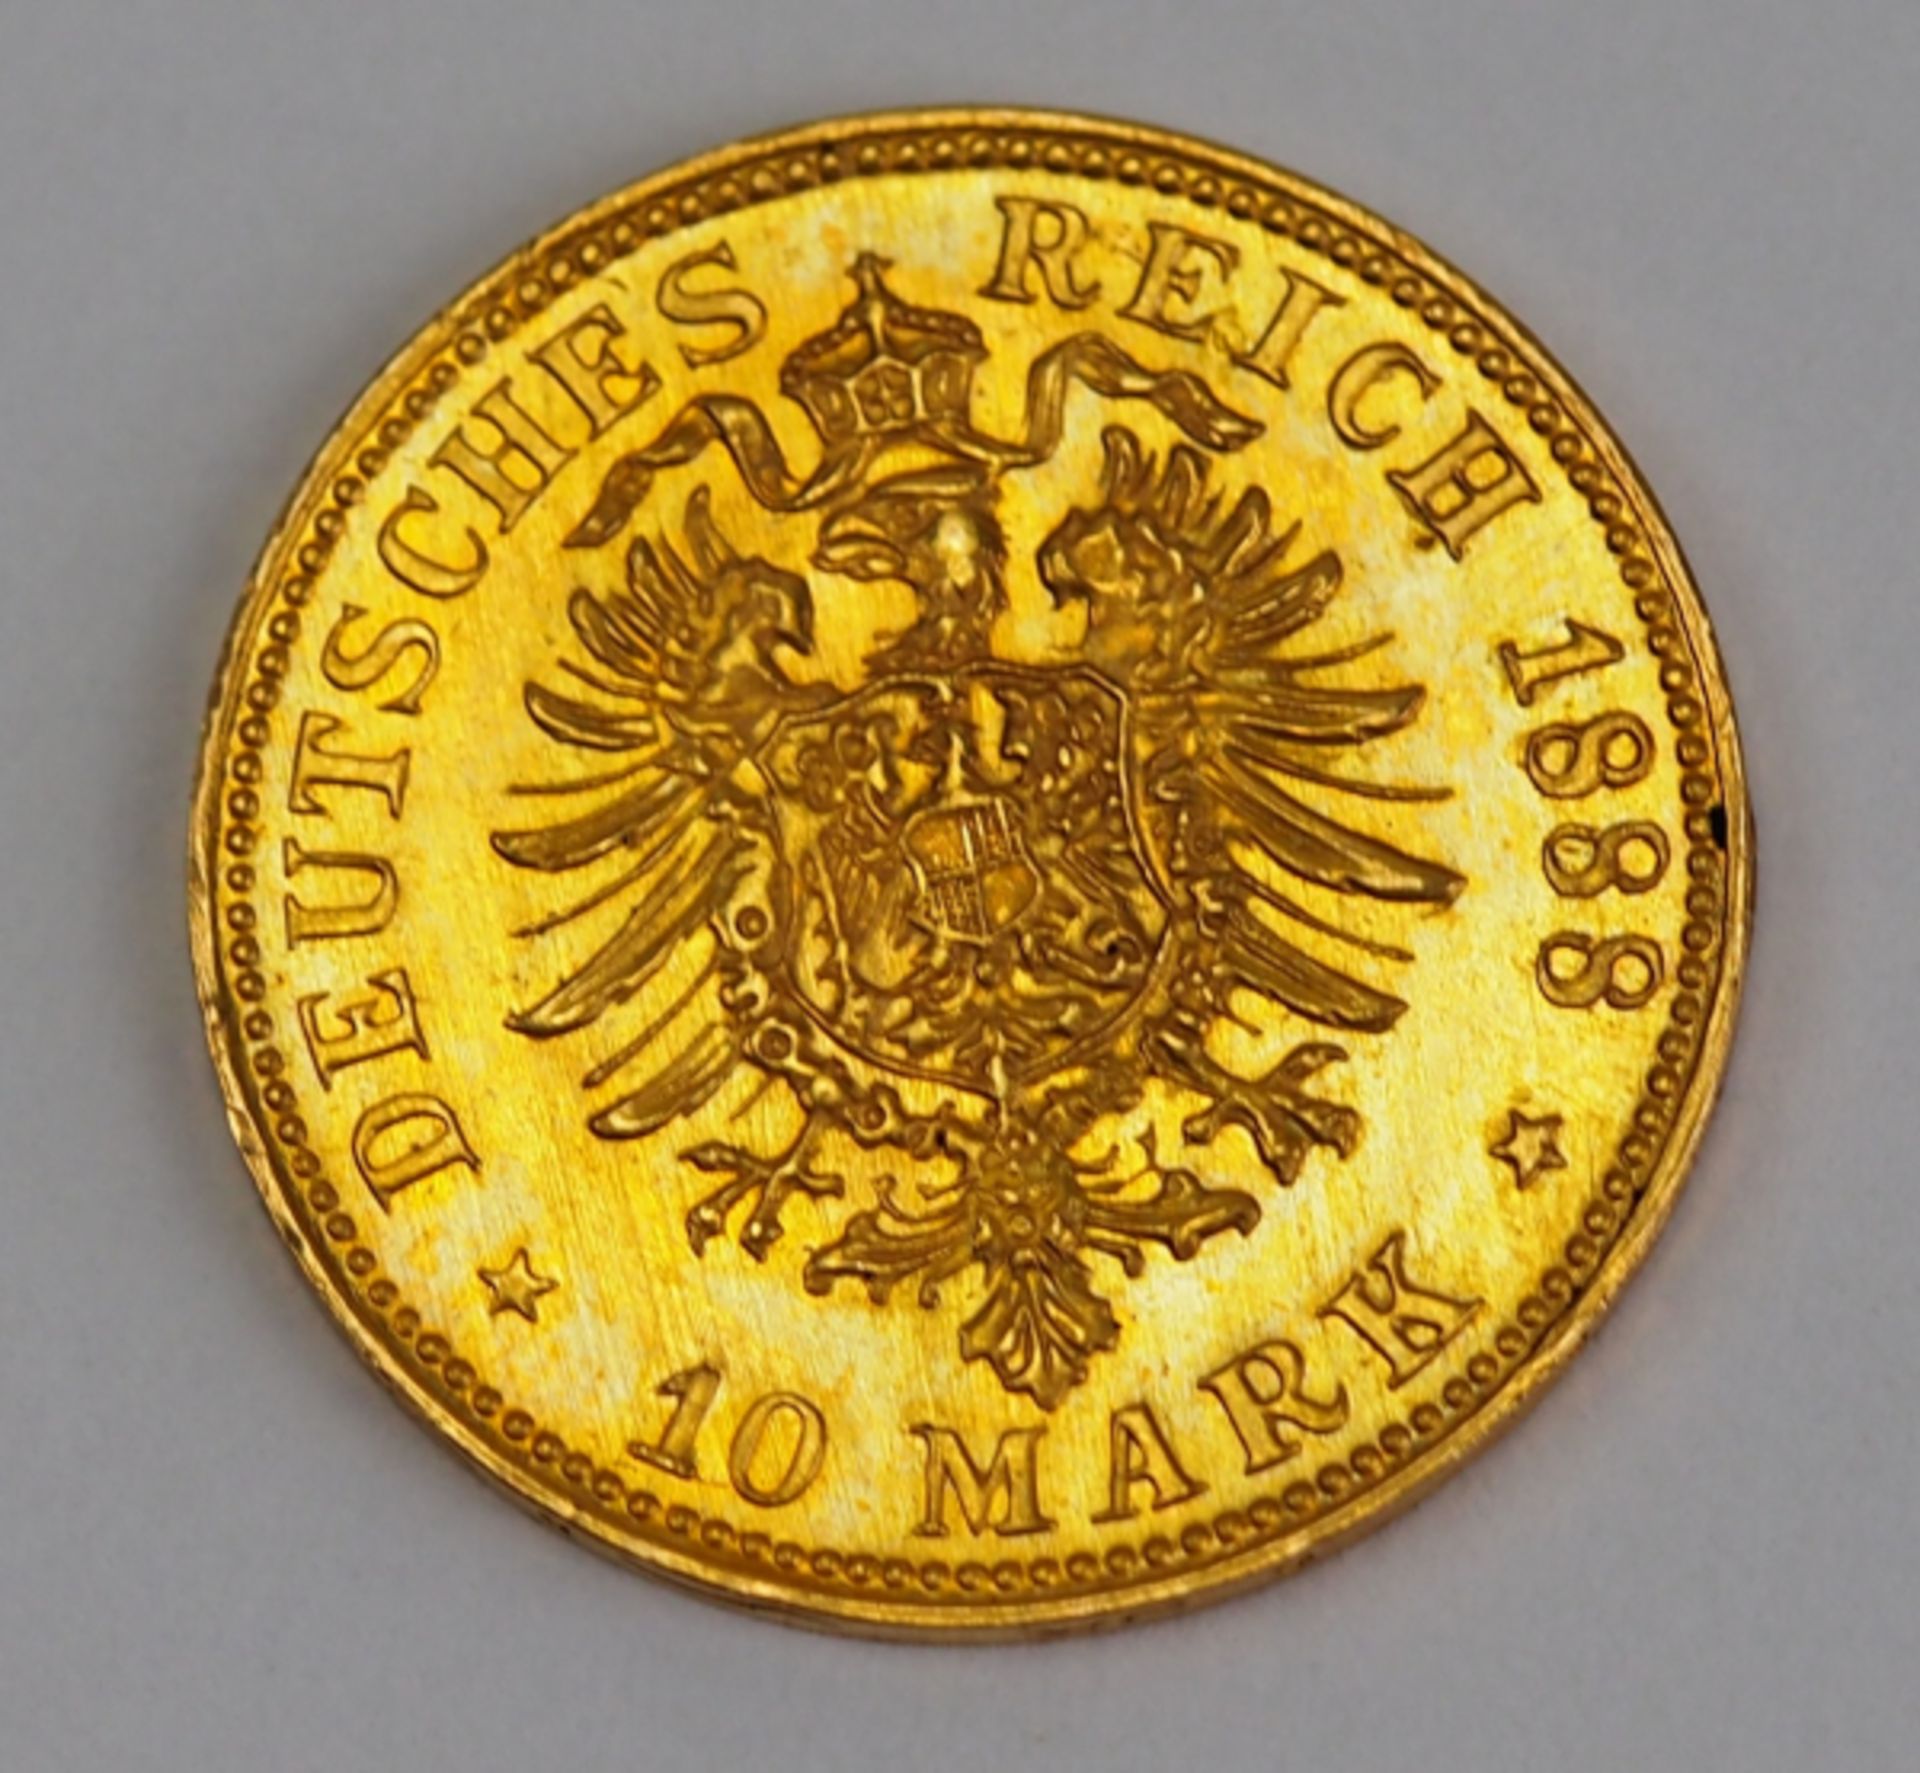 Preussen: 10 Mark, Friedrich, 1888.Gold, Münzzeichen D.Zustand: I-II- - -23.00 % buyer's premium - Image 2 of 2